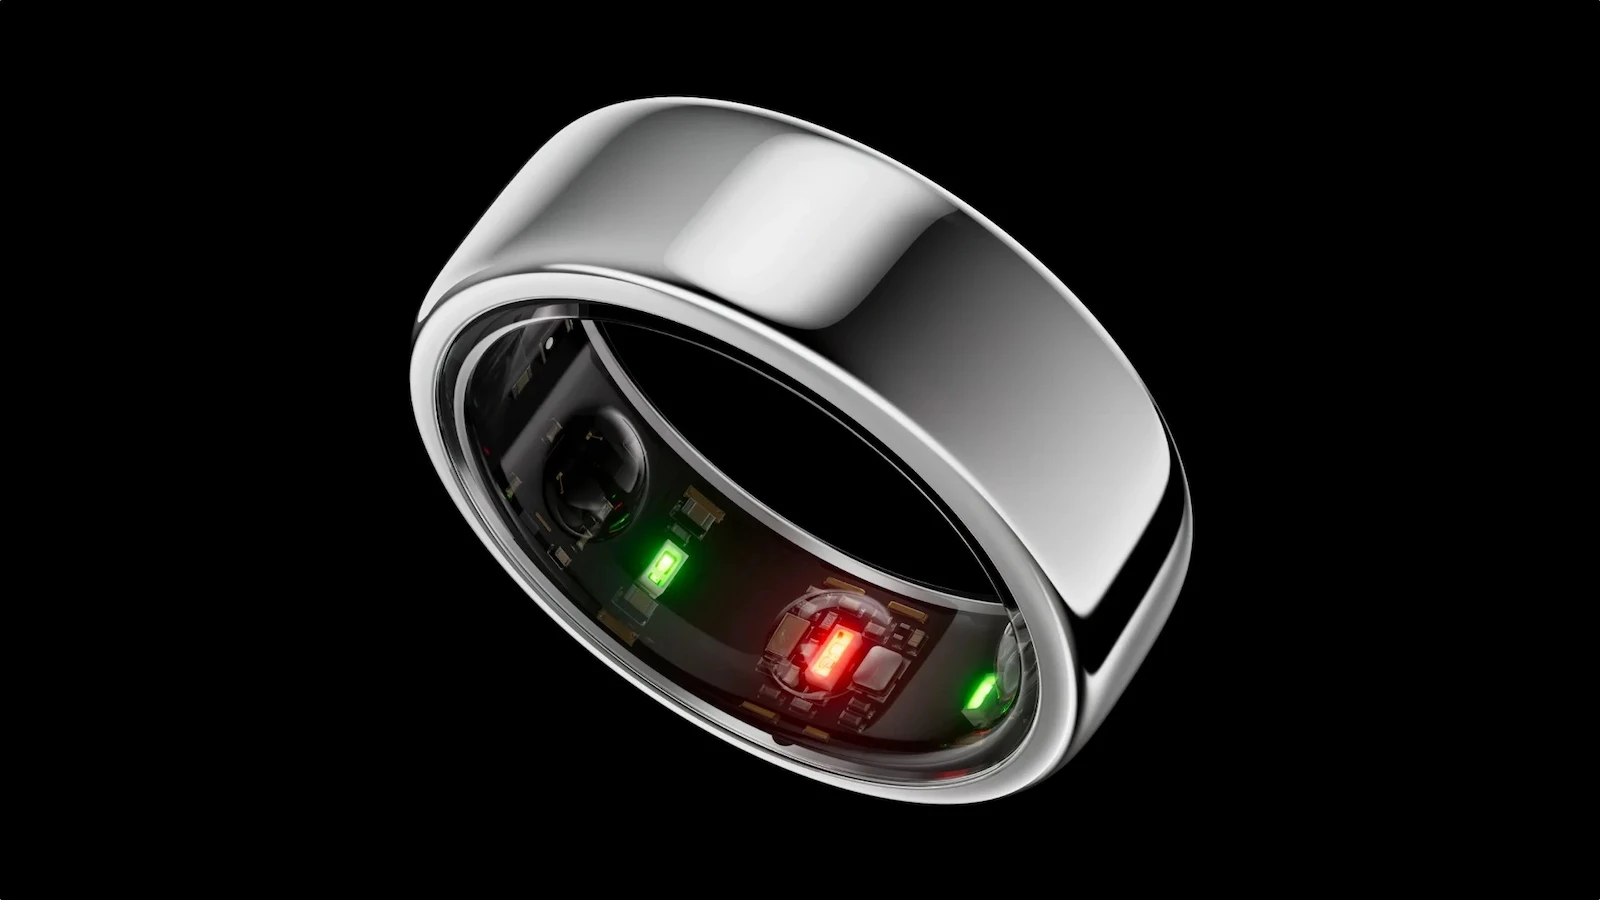 Samsung entra en el mercado de anillos inteligentes con el Galaxy Ring